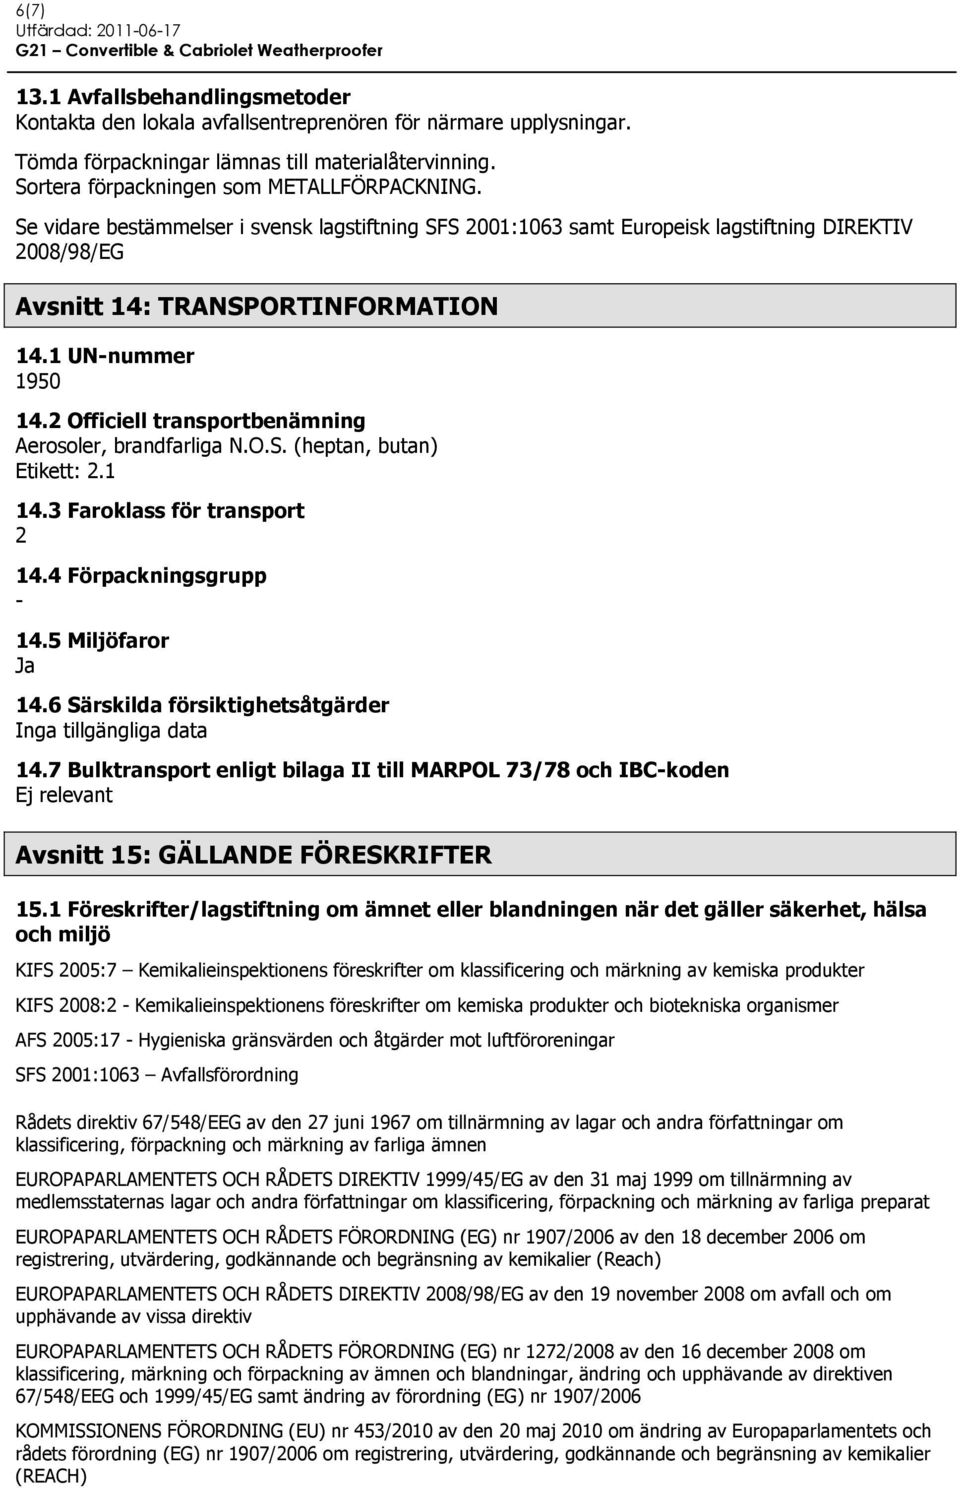 2 Officiell transportbenämning Aerosoler, brandfarliga N.O.S. (heptan, butan) Etikett: 2.1 14.3 Faroklass för transport 2 14.4 Förpackningsgrupp - 14.5 Miljöfaror Ja 14.